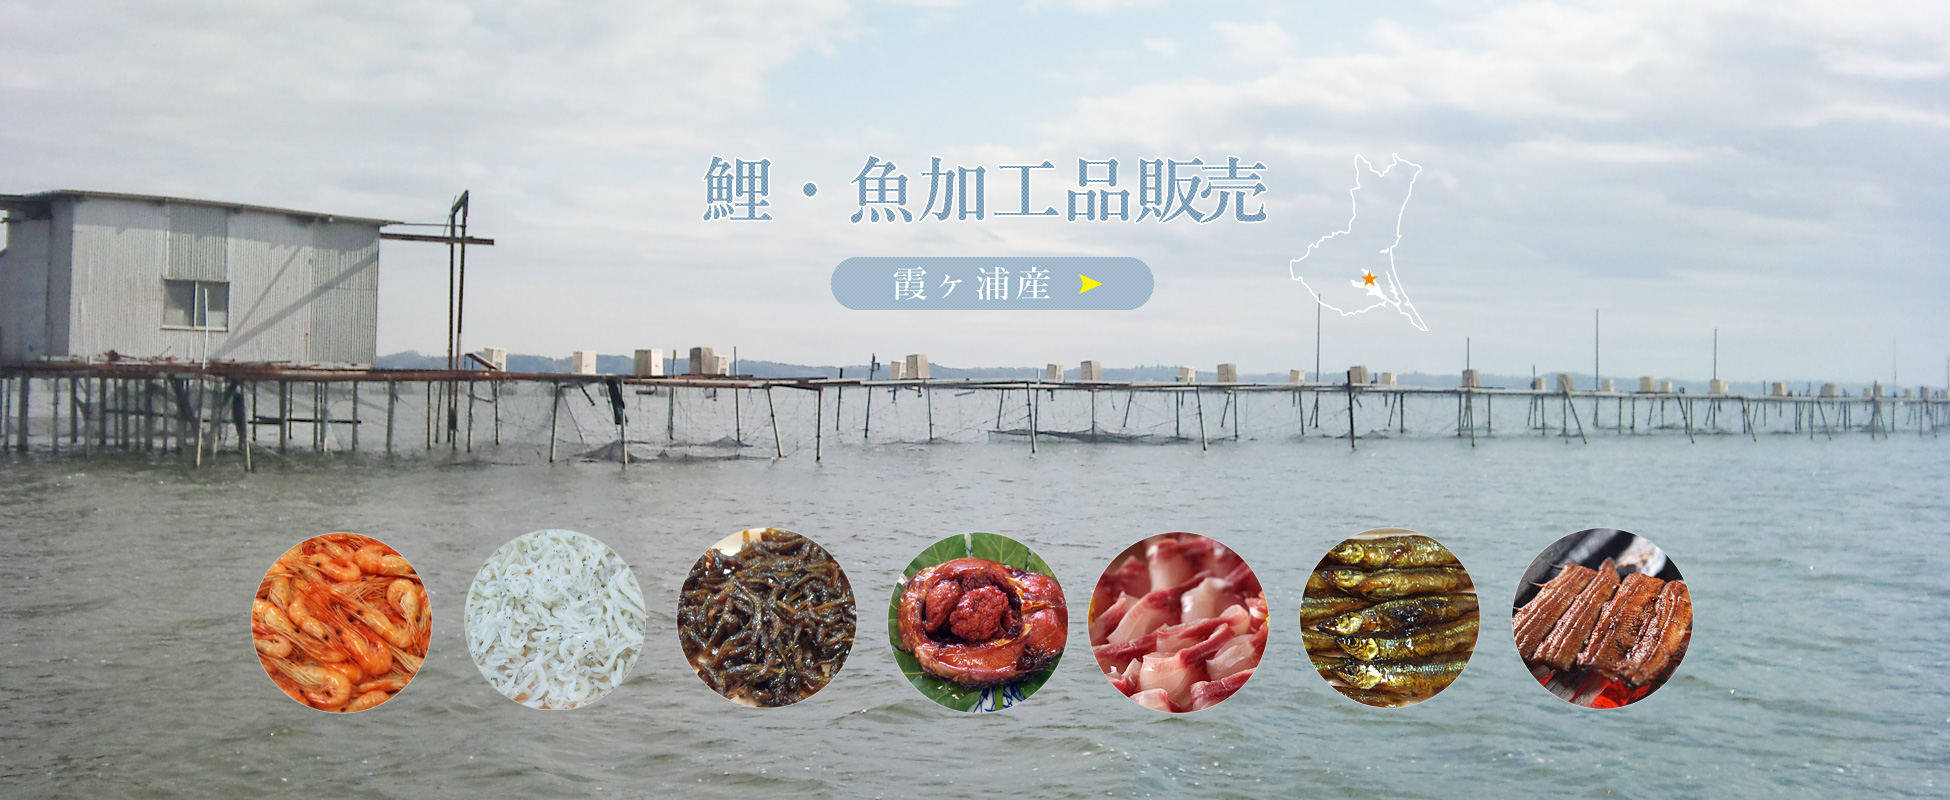 霞ヶ浦産の食用鯉・淡水魚の加工品販売